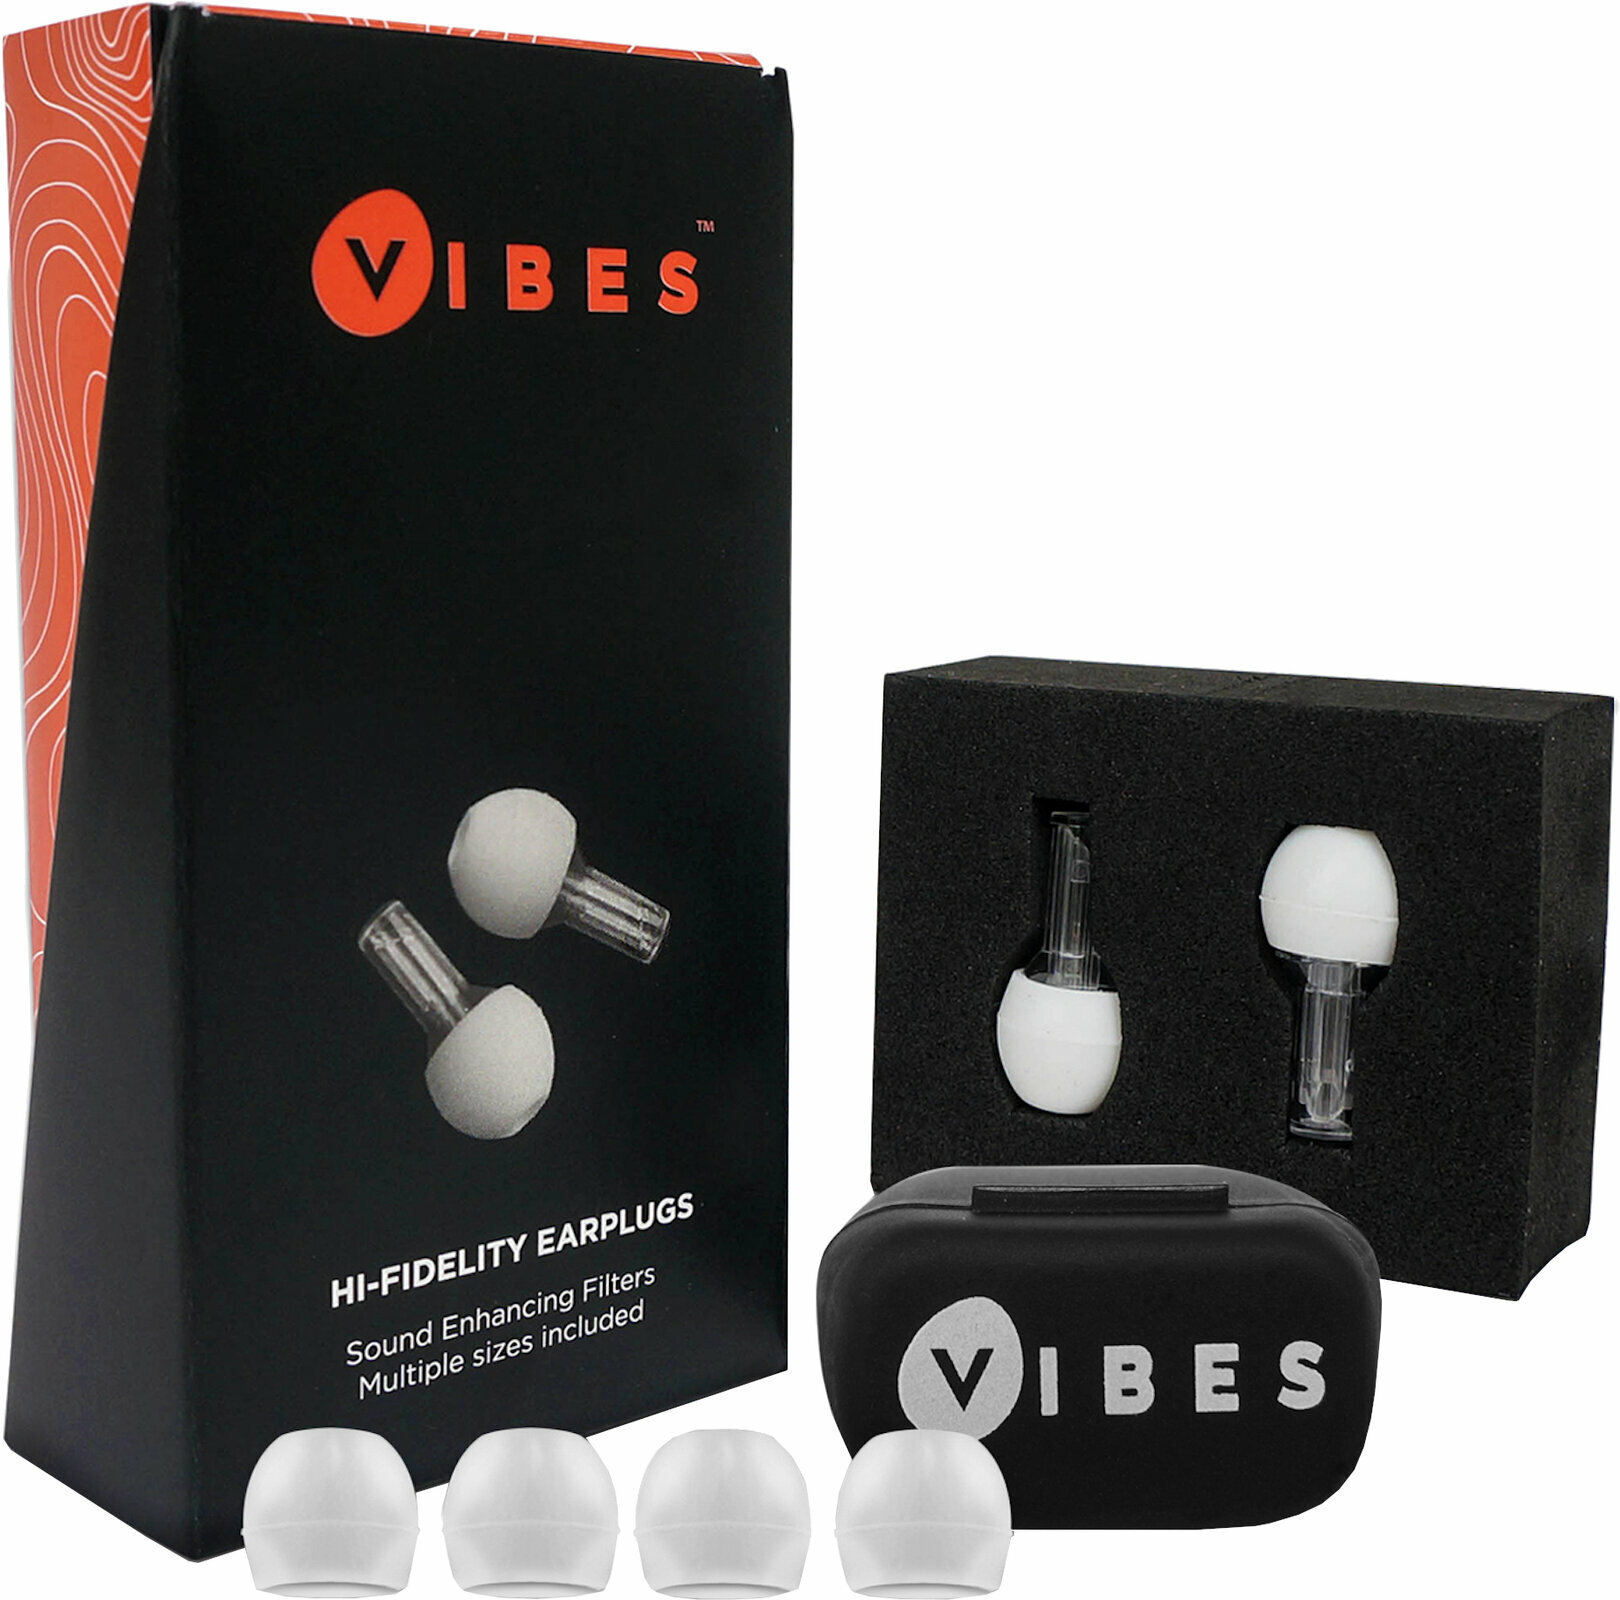 Vibes Hi-Fidelity Earplugs Chrániče sluchu Vibes